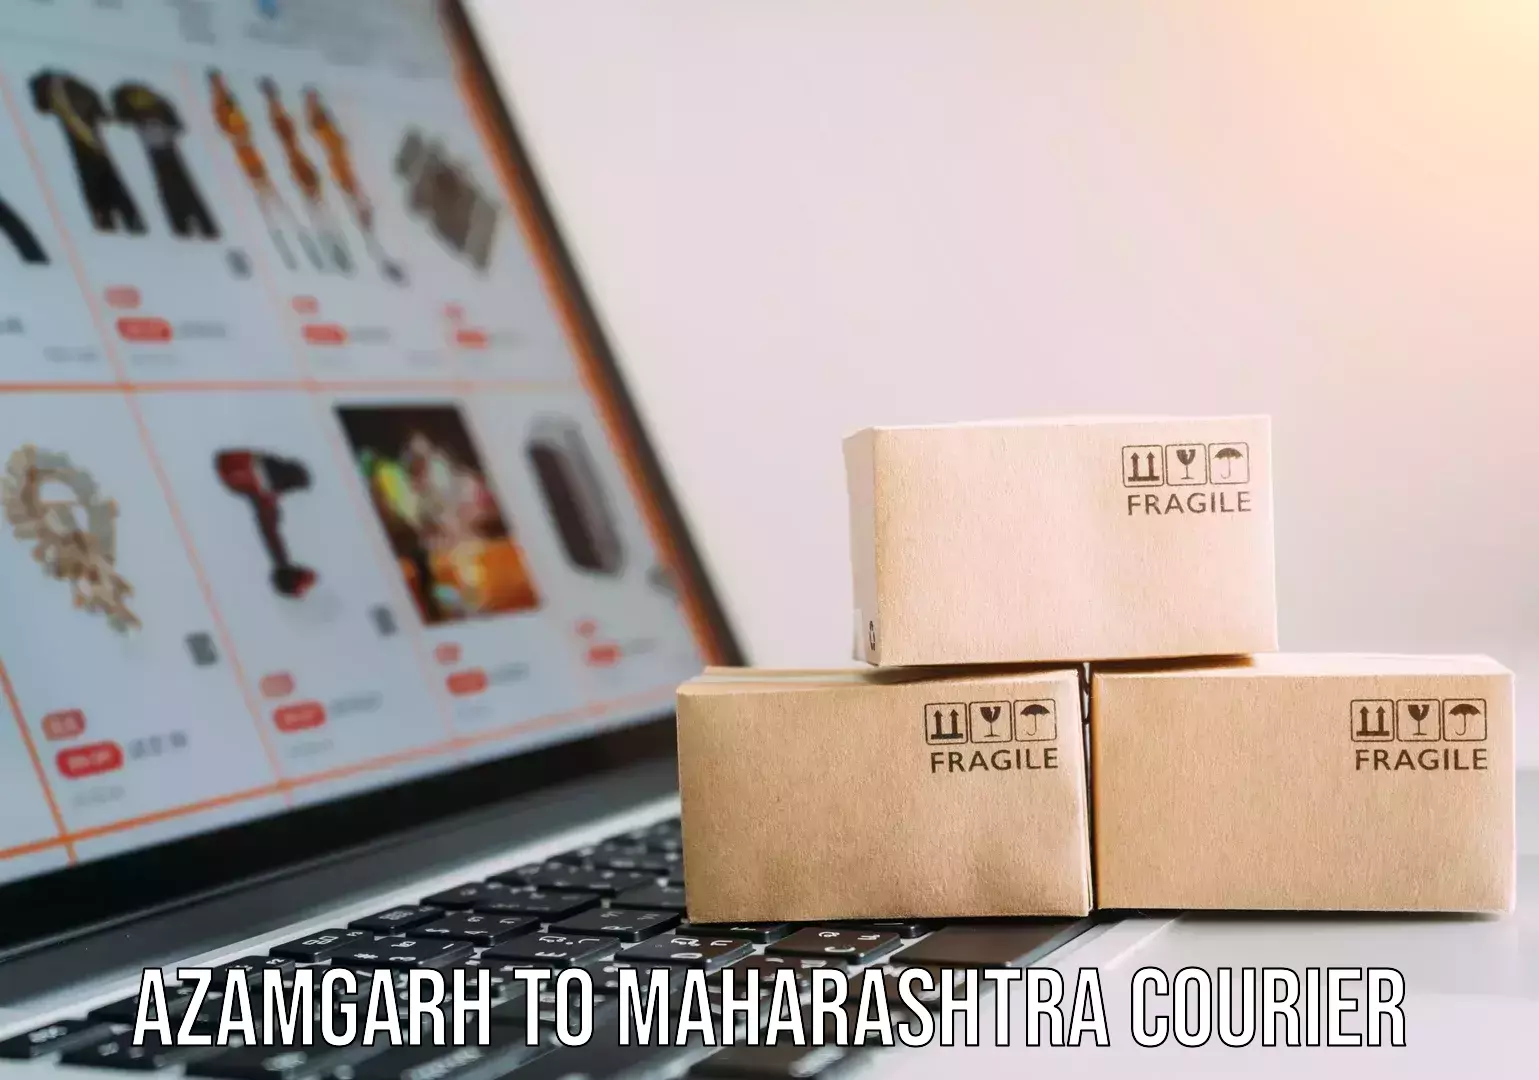 Same-day delivery options Azamgarh to Maharashtra